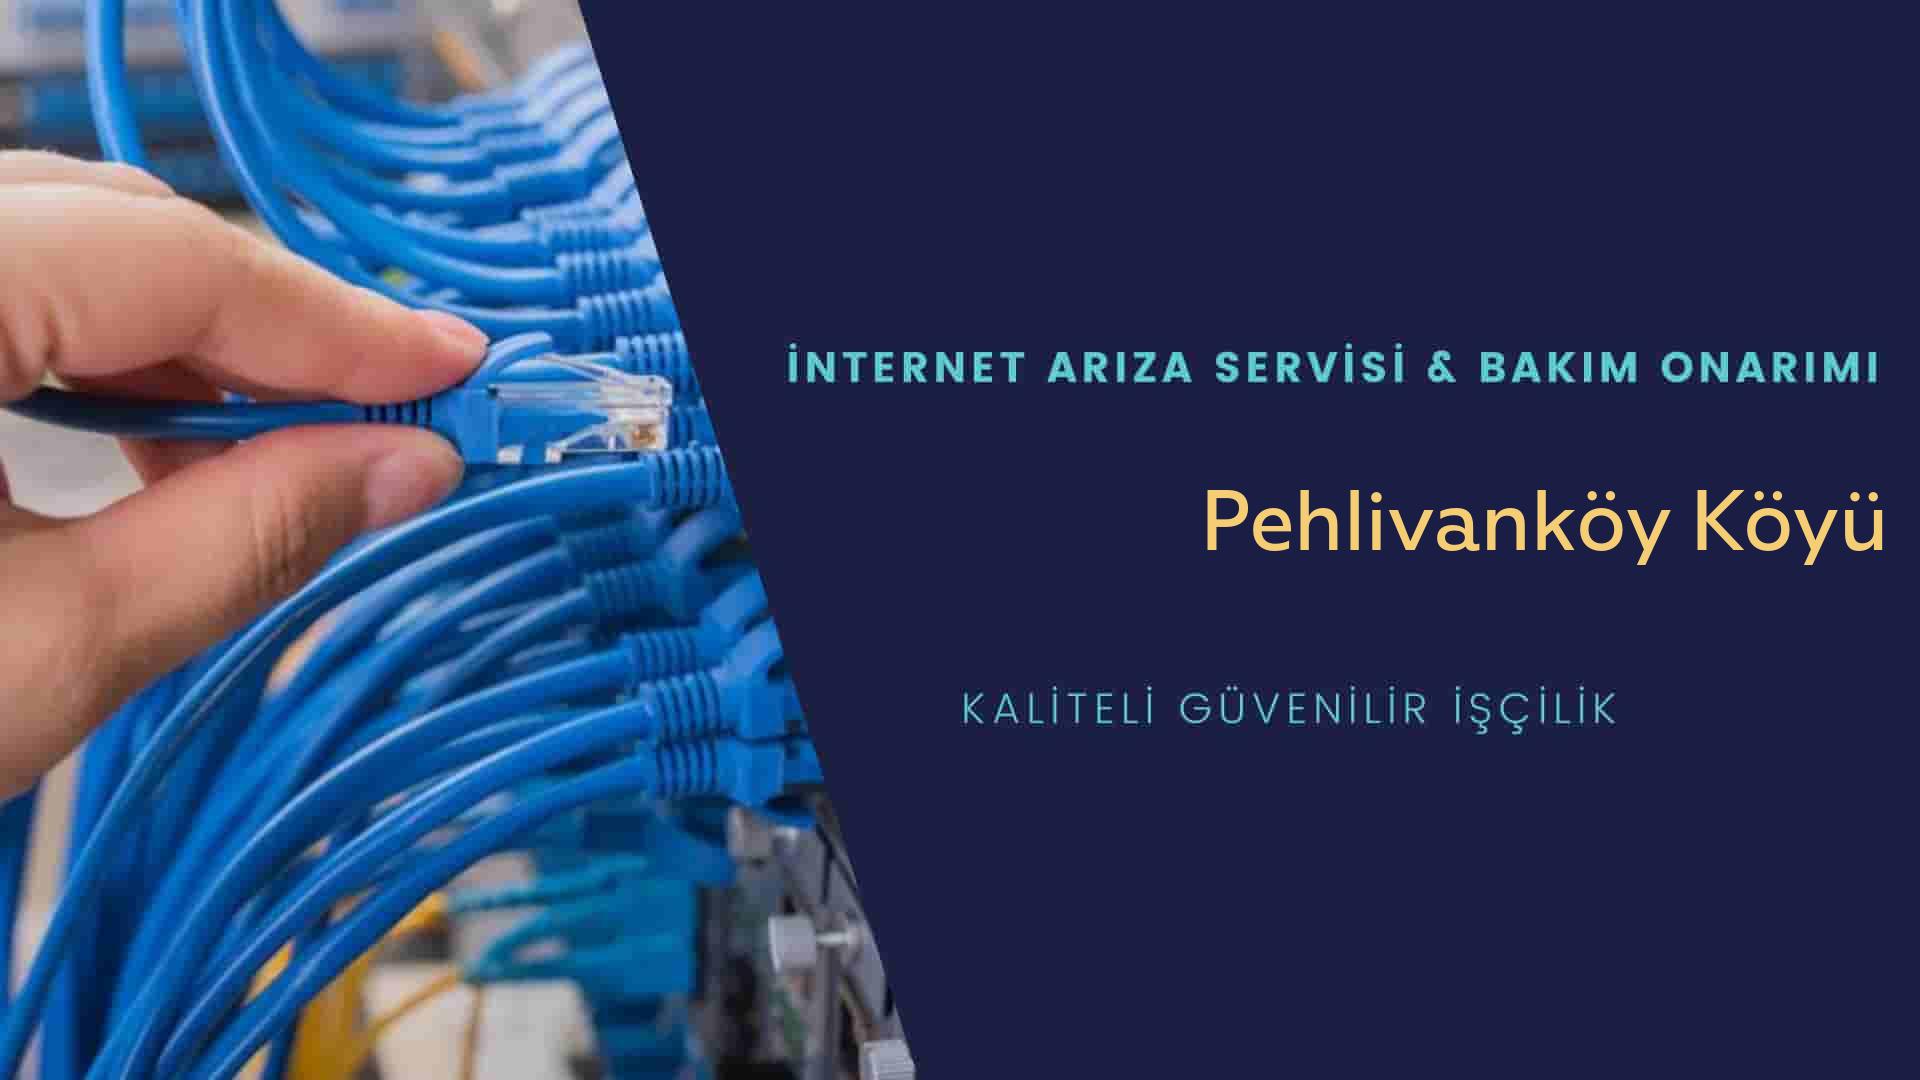 Pehlivanköy Köyü internet kablosu çekimi yapan yerler veya elektrikçiler mi? arıyorsunuz doğru yerdesiniz o zaman sizlere 7/24 yardımcı olacak profesyonel ustalarımız bir telefon kadar yakındır size.